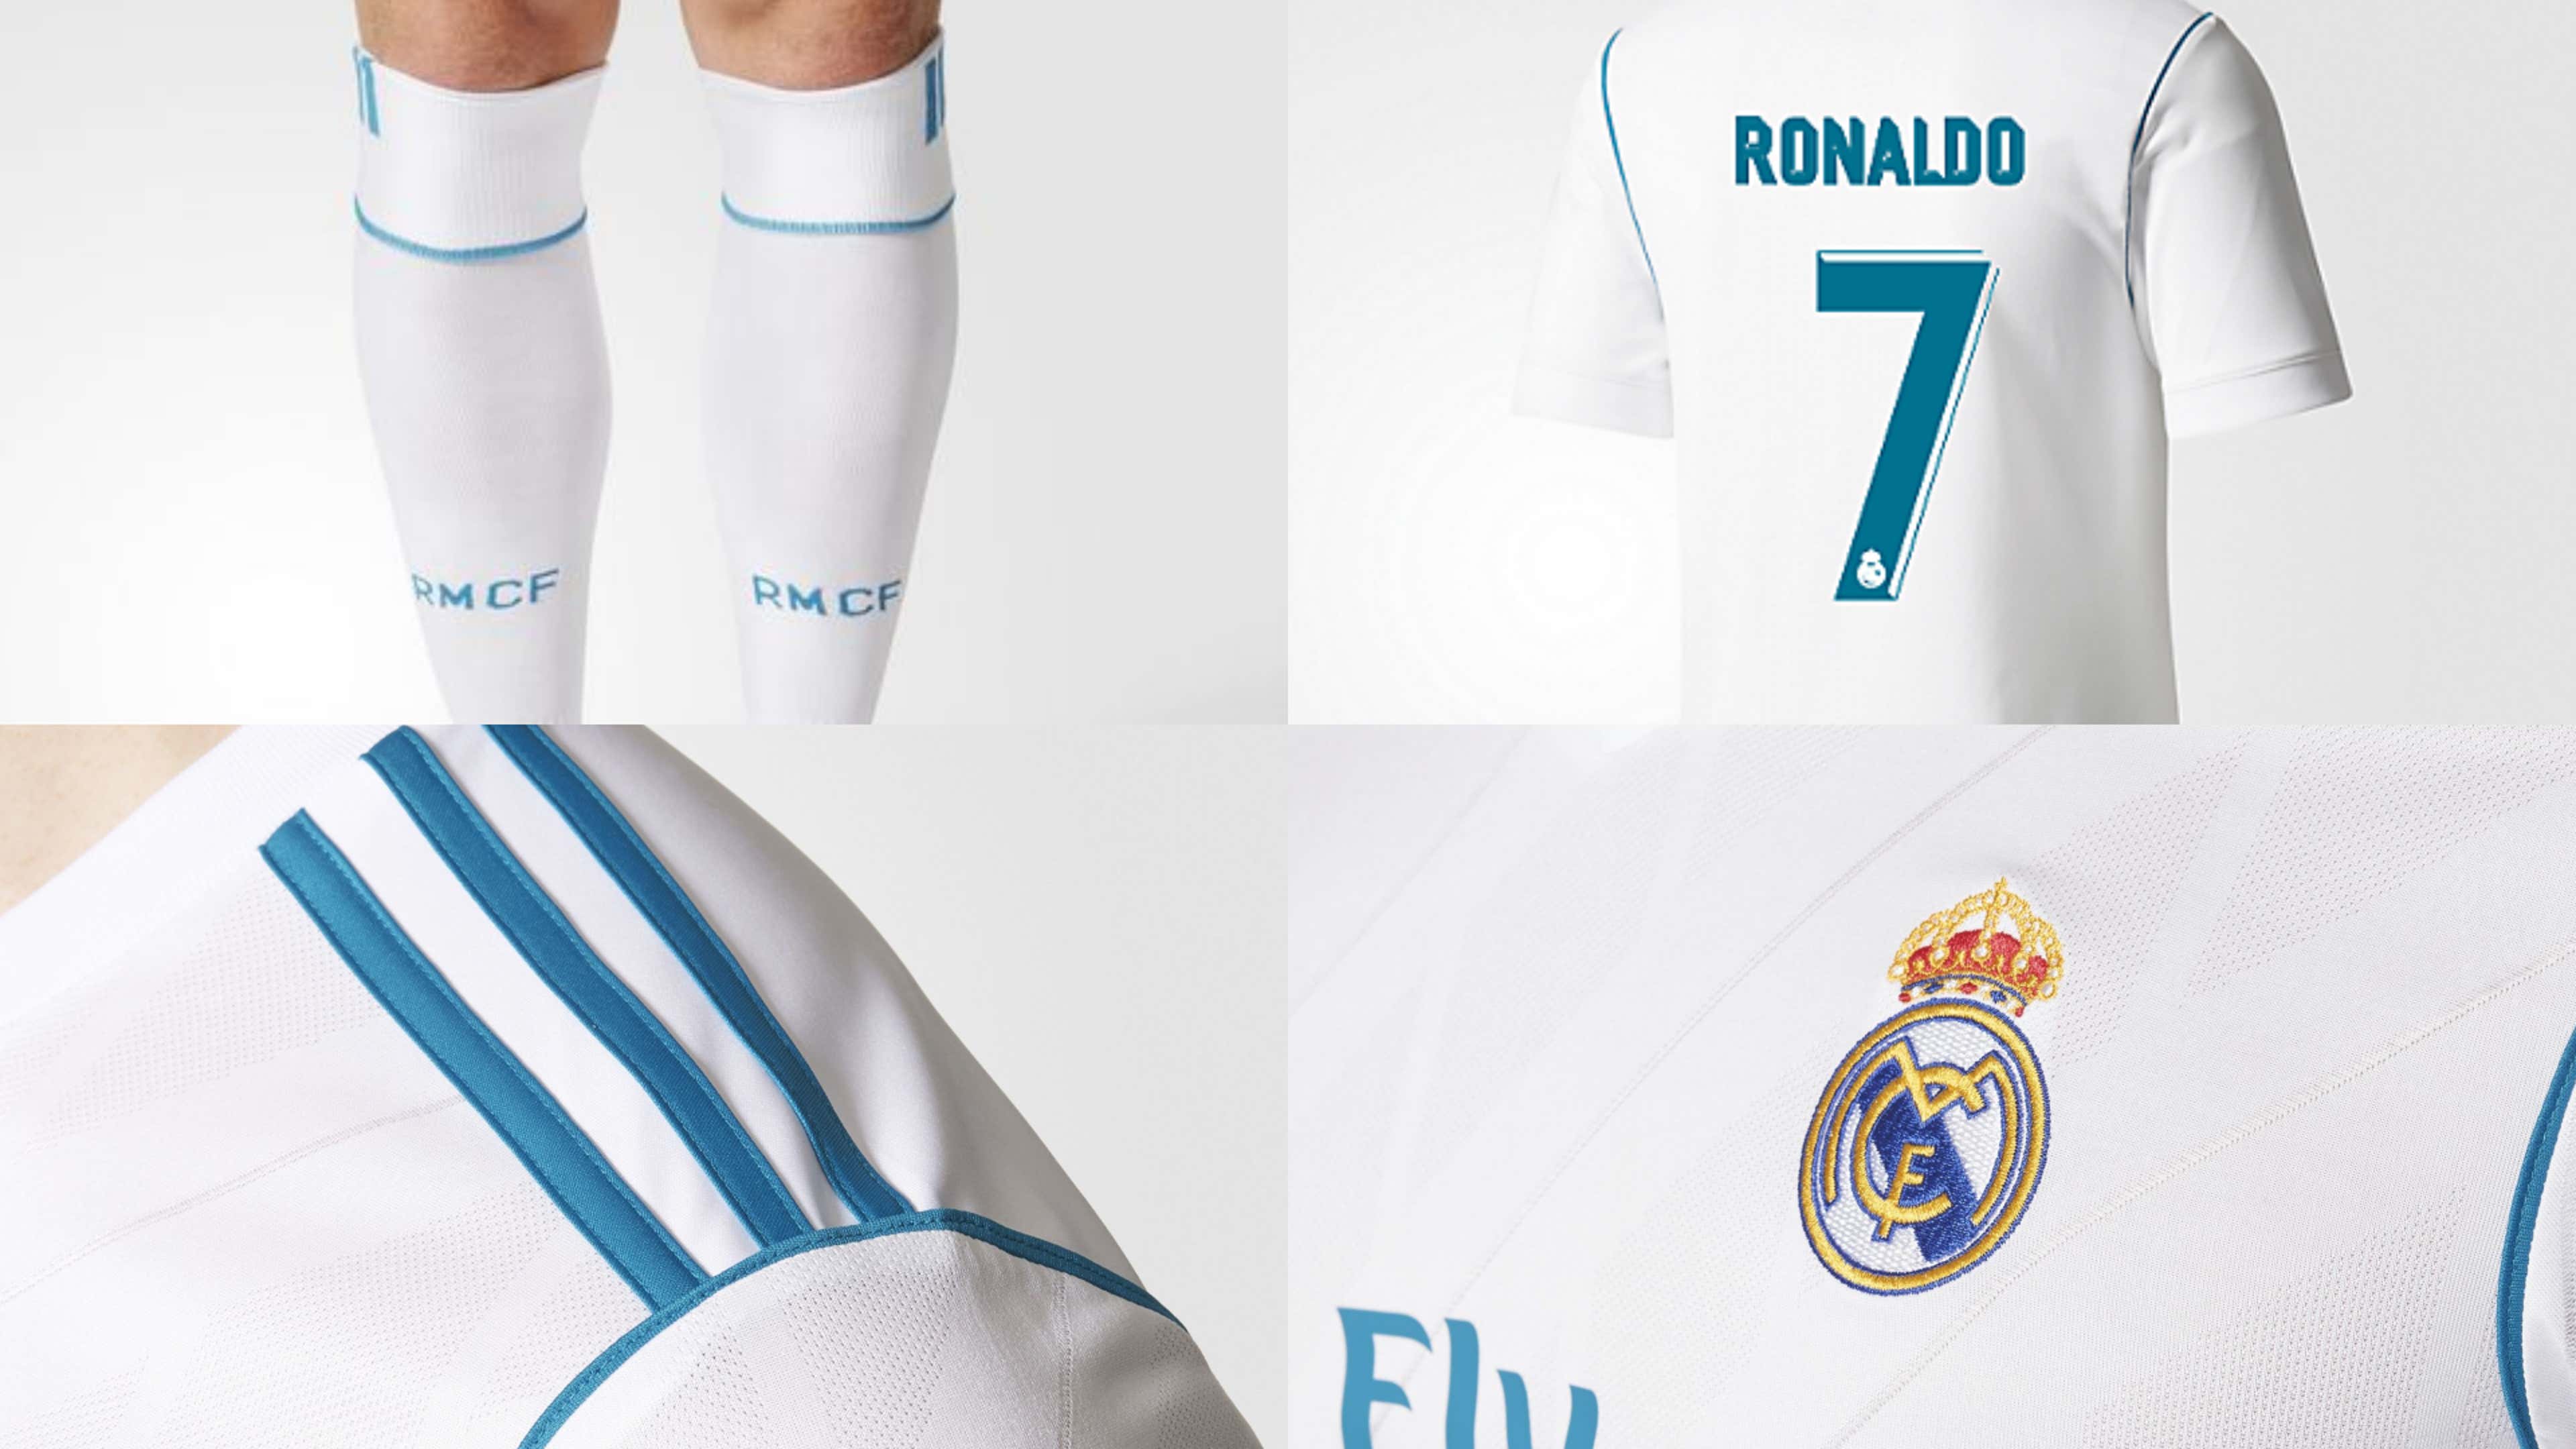 Camiseta De Real Madrid 2018